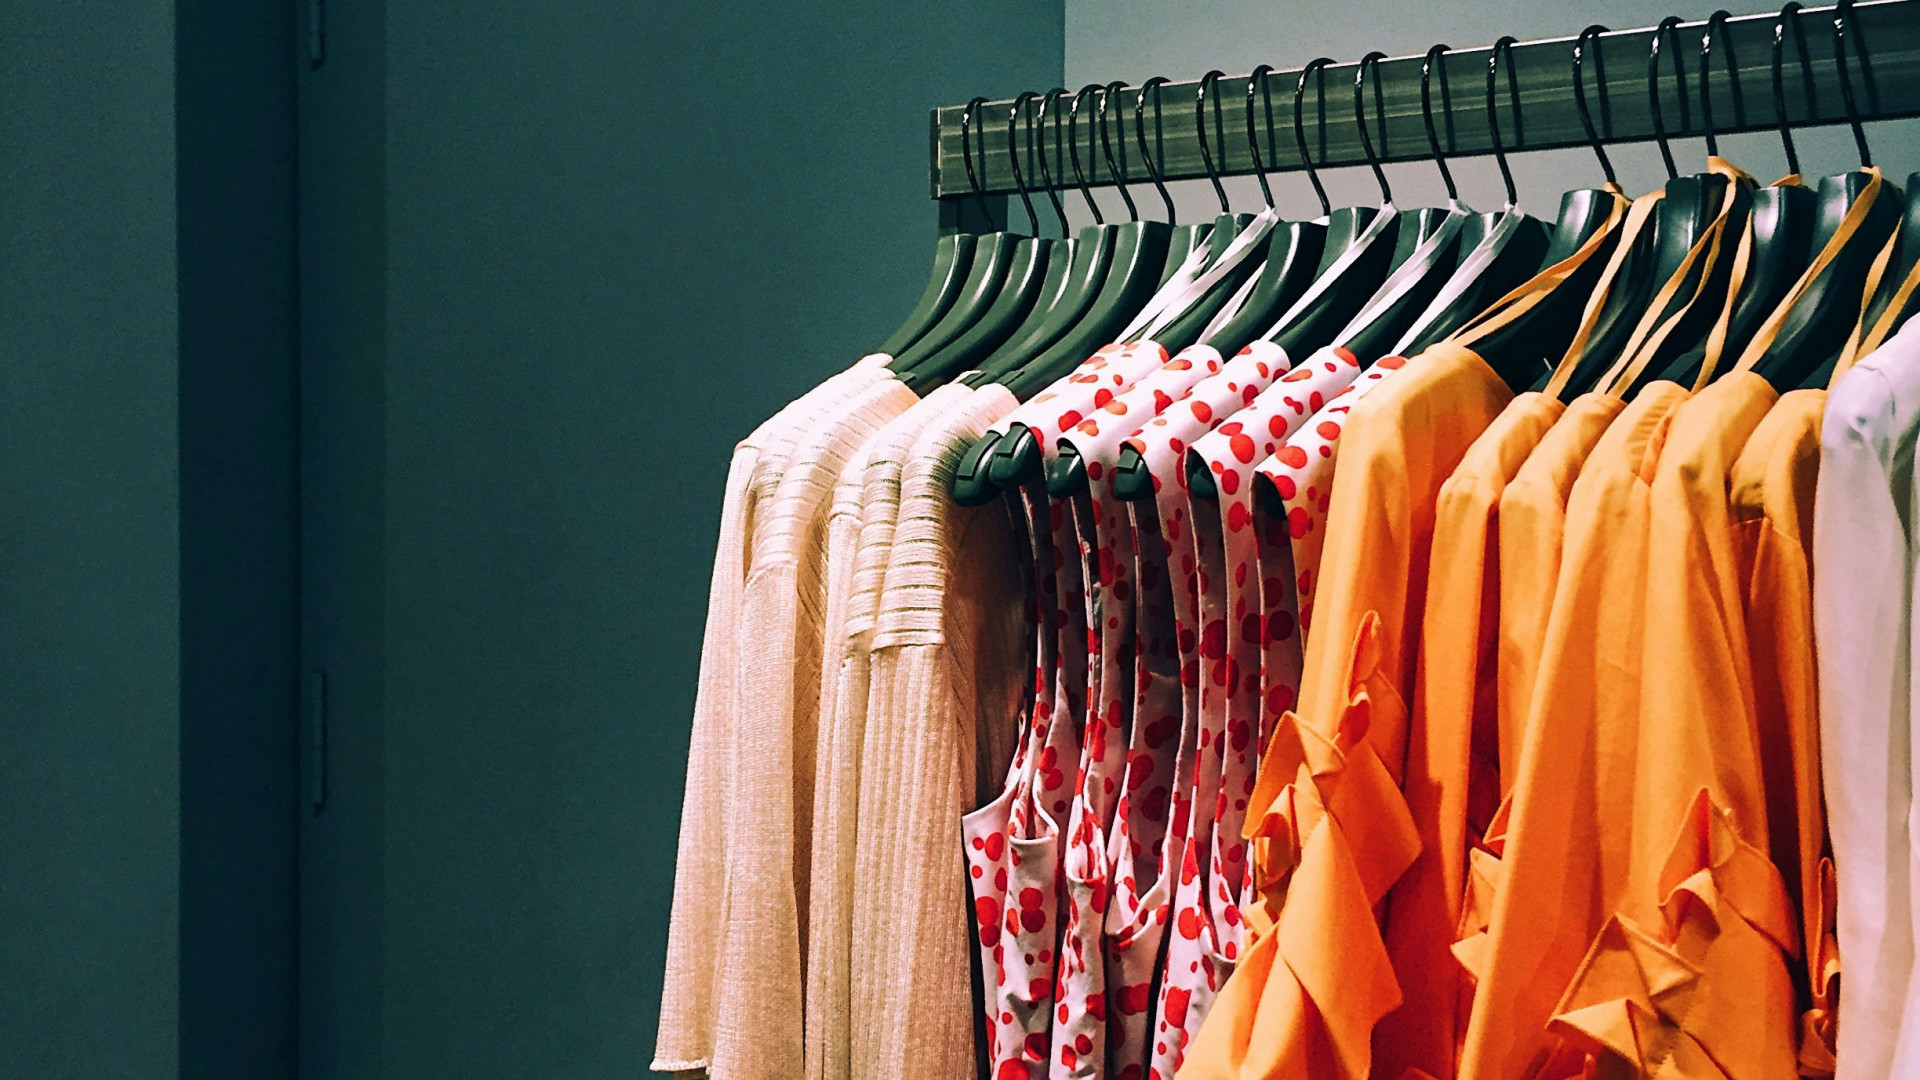 Trouver le fournisseur de vêtements idéal : quelques conseils utiles !